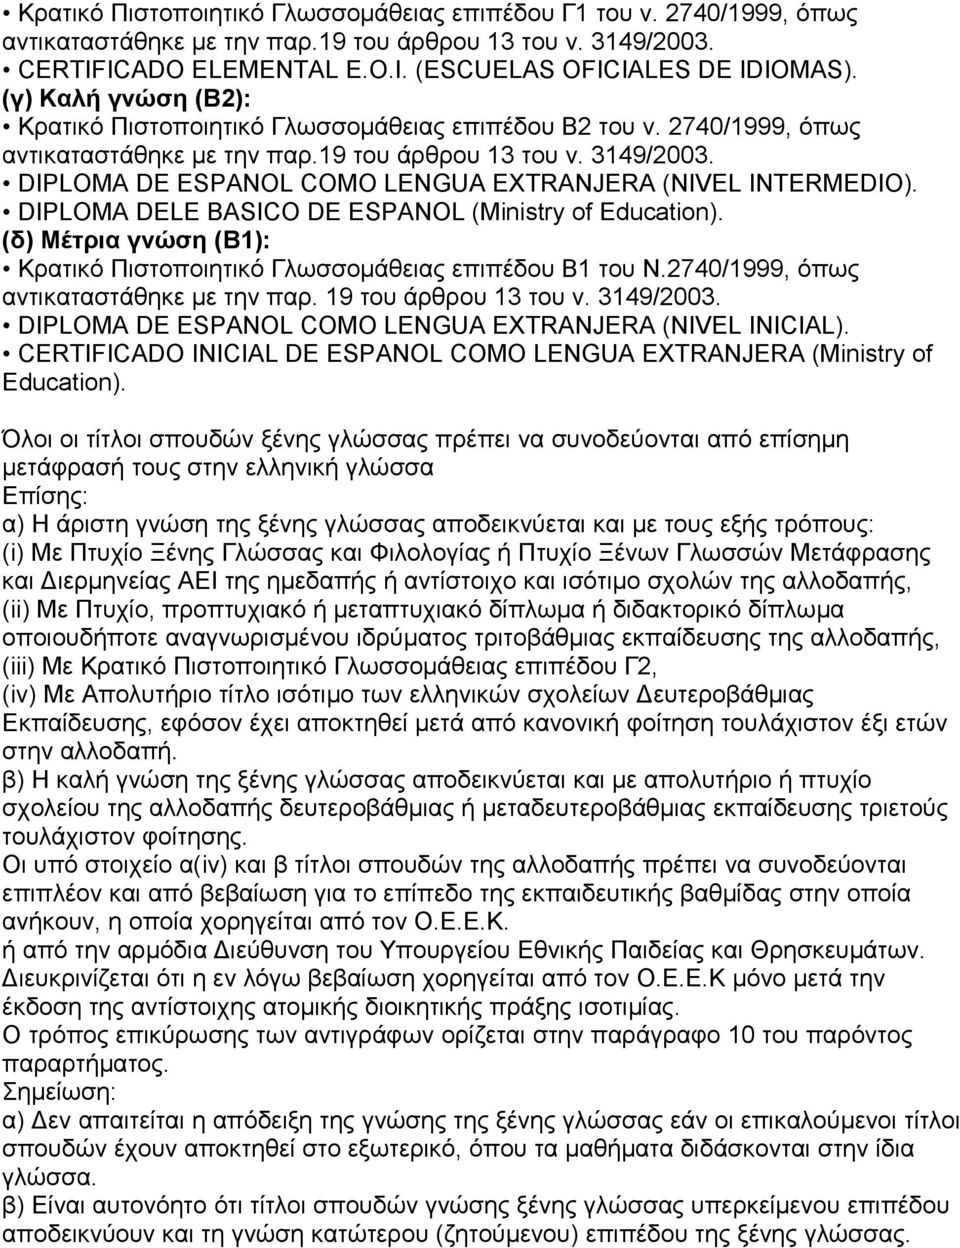 DIPLOMA DELE BASICO DE ESPANOL (Ministry of Education). (δ) Μέτρια γνώση (Β1): Κρατικό Πιστοποιητικό Γλωσσομάθειας επιπέδου Β1 του Ν.2740/1999, όπως αντικαταστάθηκε με την παρ. 19 του άρθρου 13 του ν.